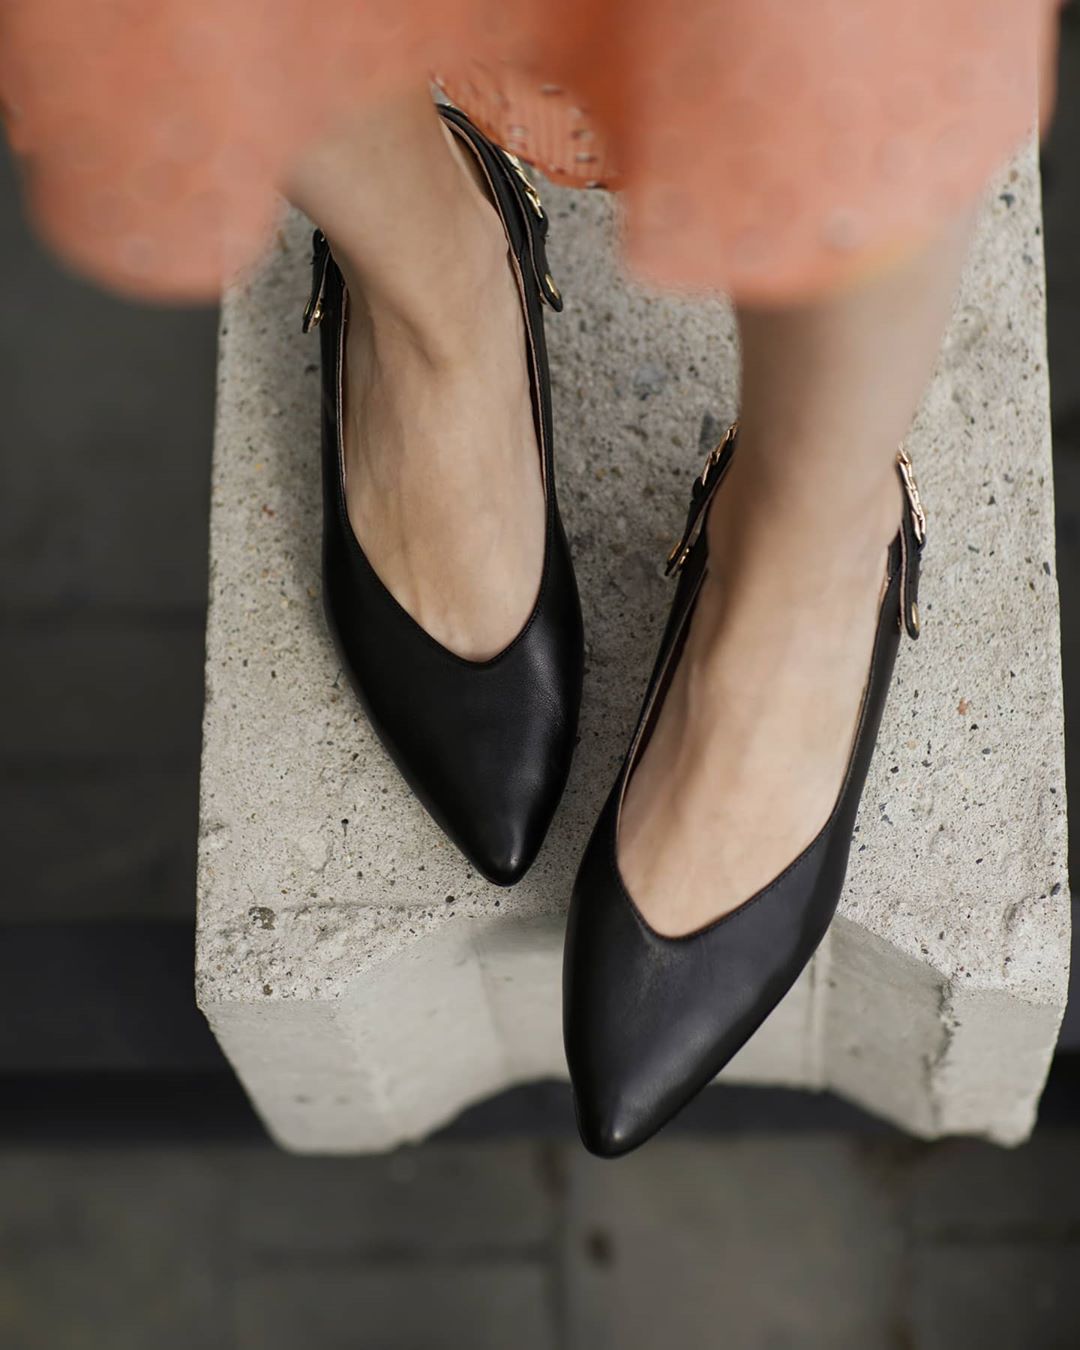 TERVOLINA - Эти туфли кажутся простыми и понятными только на первый взгляд. 
Но металлические детали на пятке и каблуке выдают их харизматичность.
 
В компании таких туфель романтические образы многок...